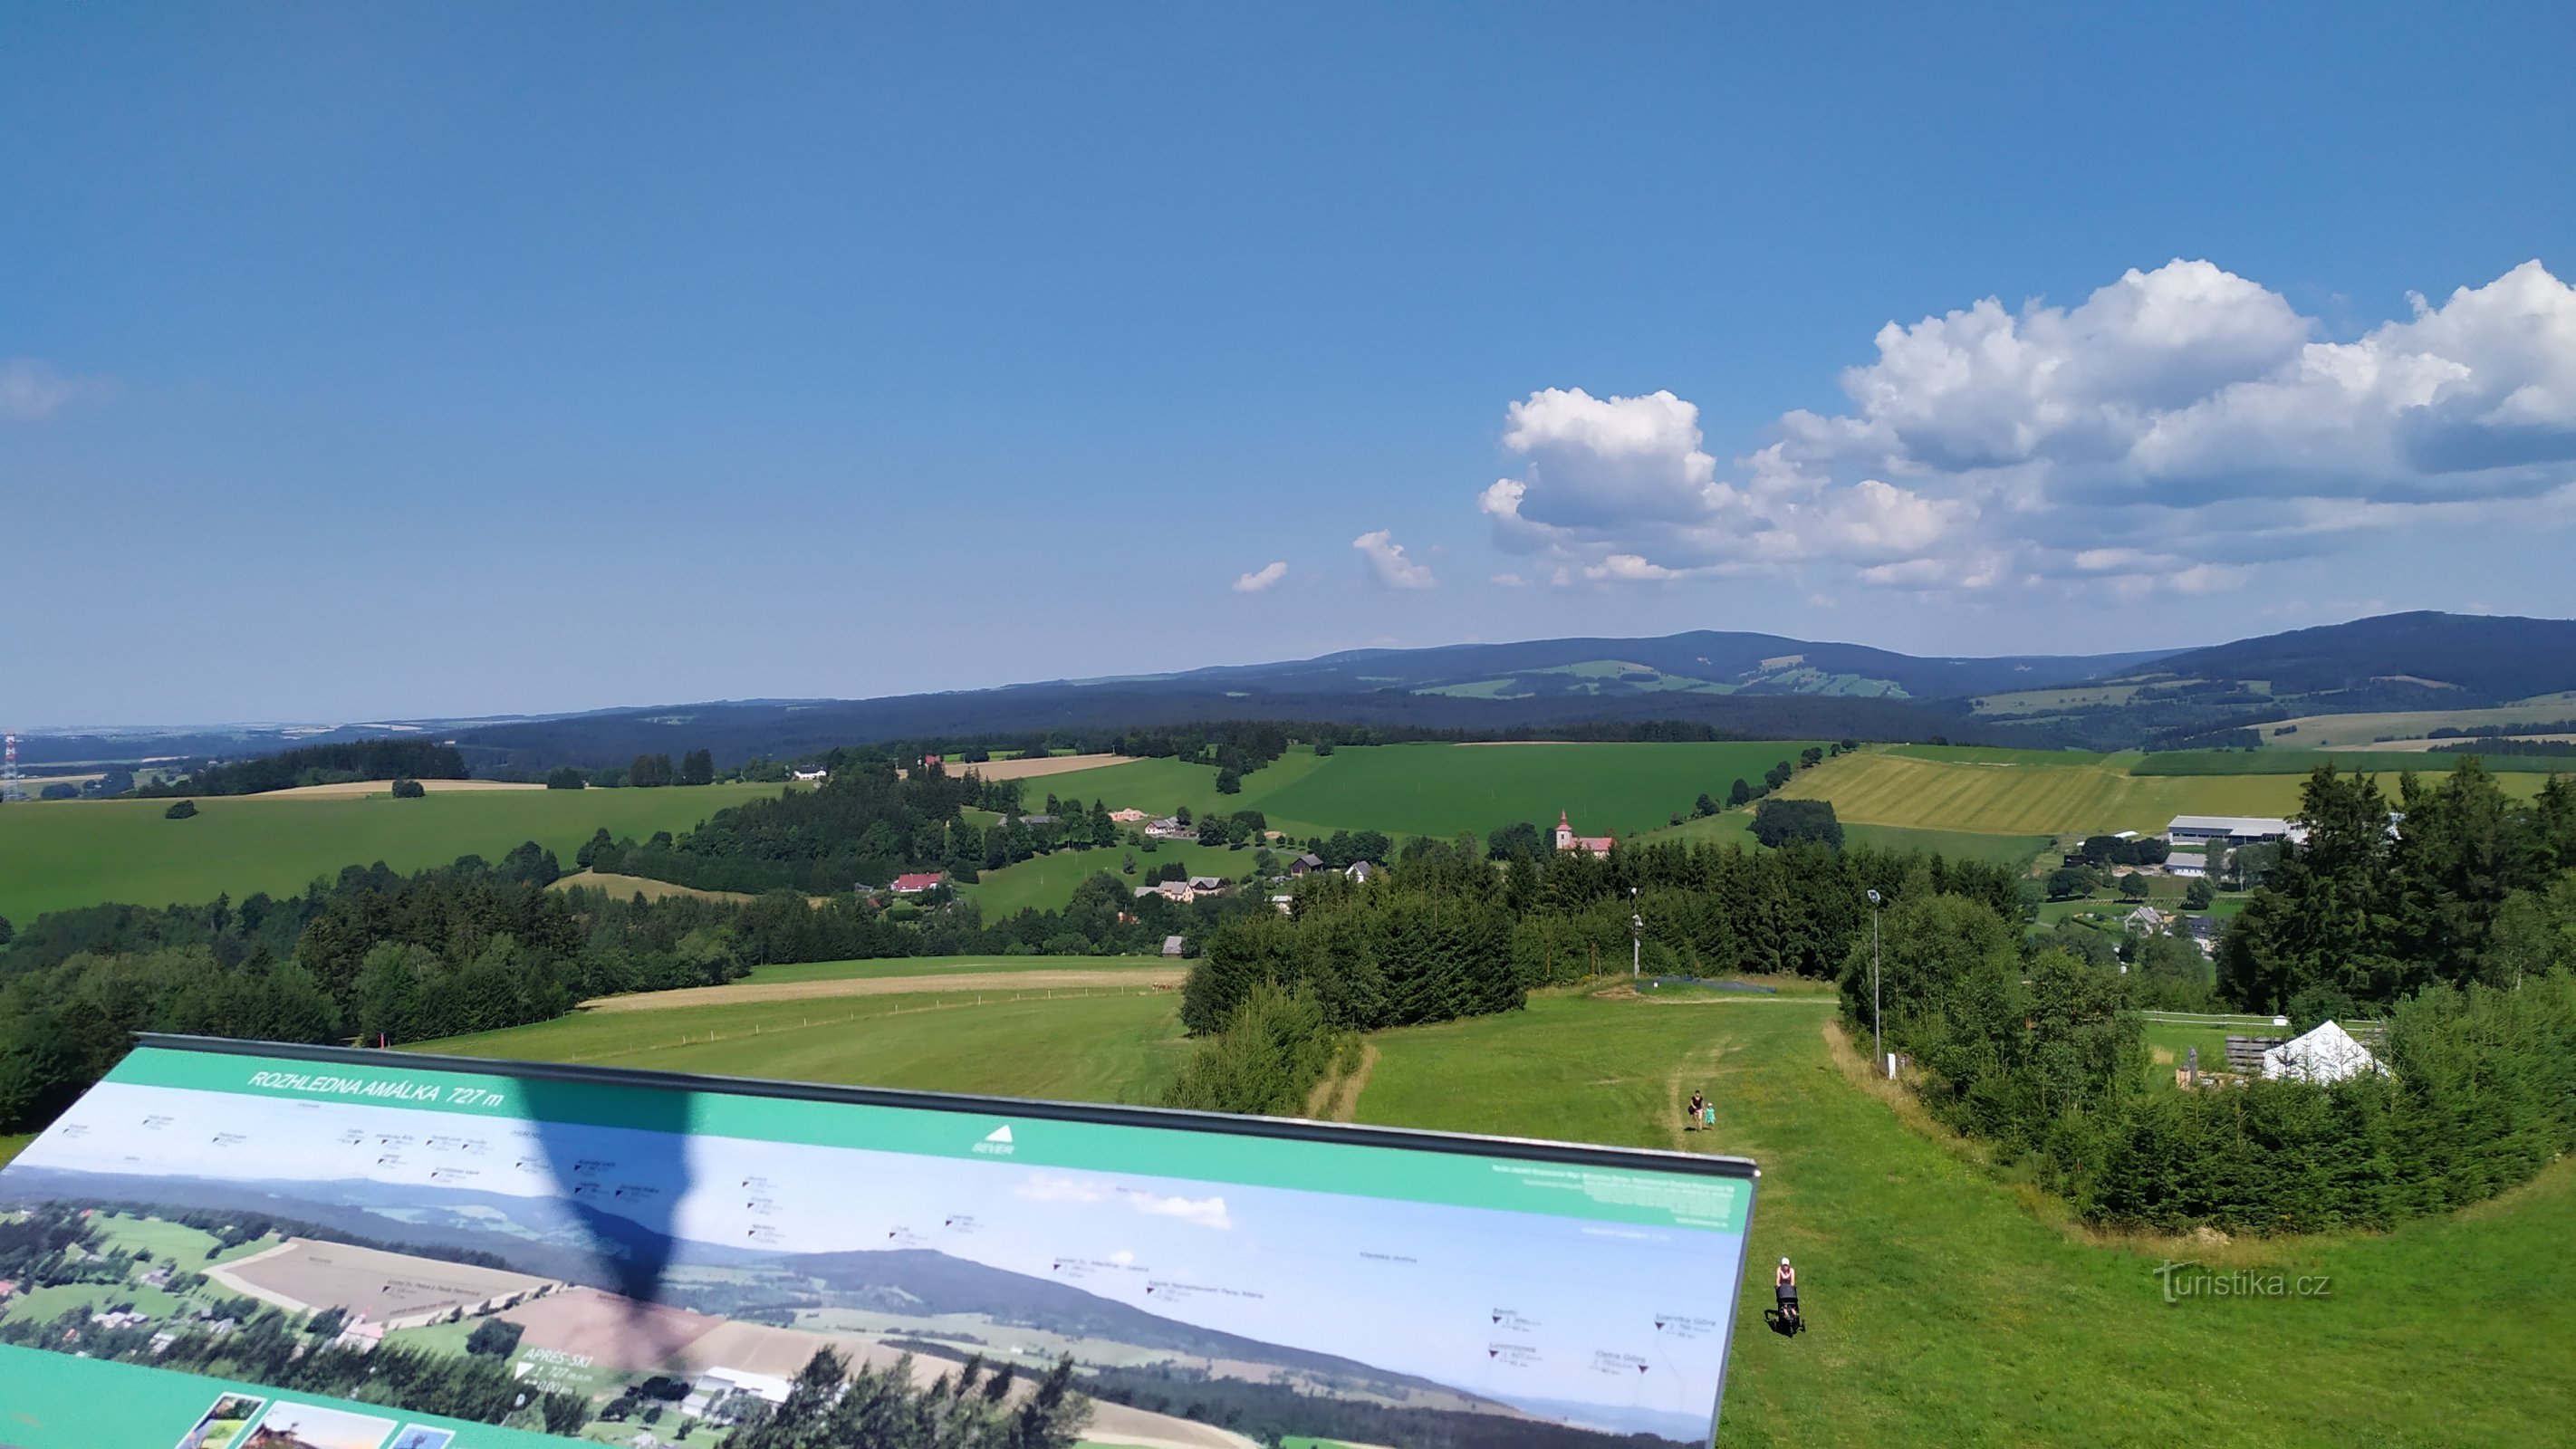 Вид в северном направлении, на переднем плане деревня Ческе-Петровице, вдали горнолыжный курорт Ржички.